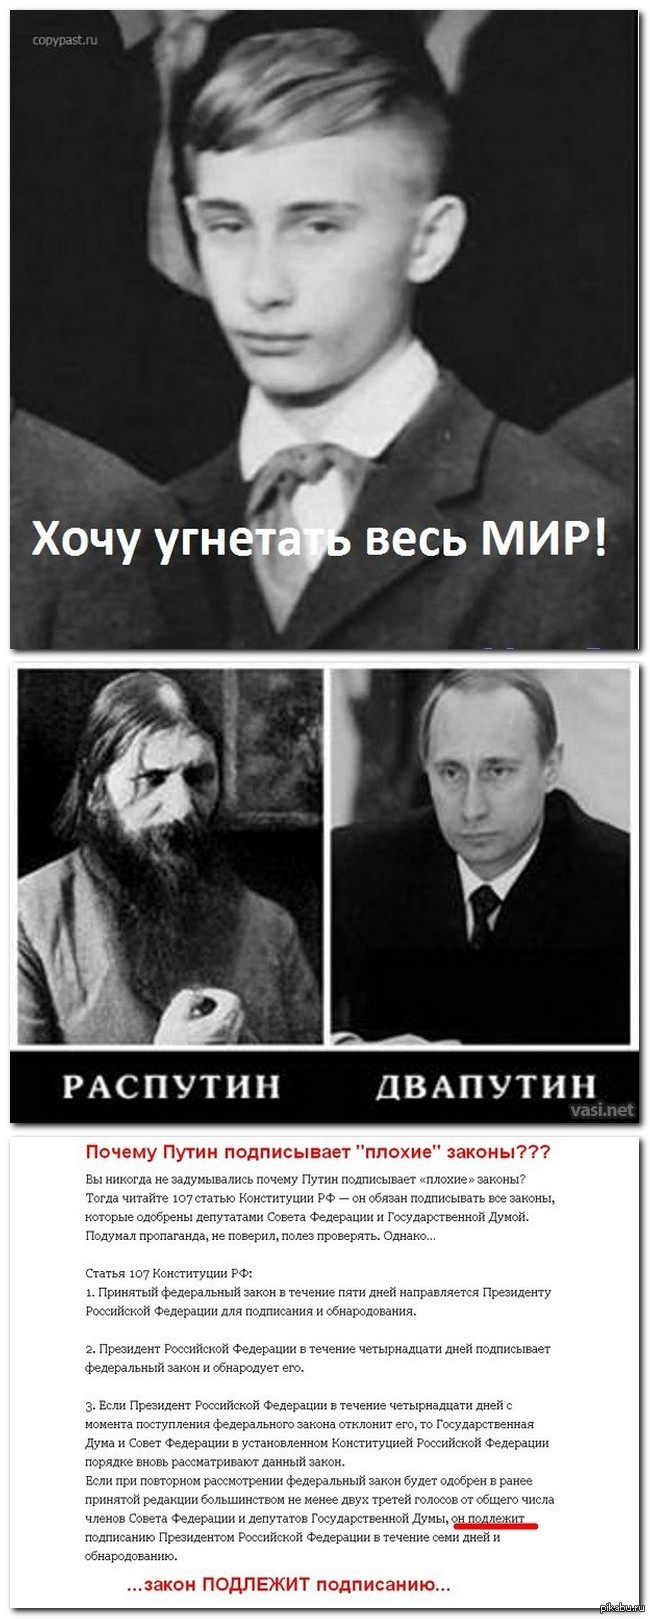 николай 2 и дмитрий медведев сходство фото